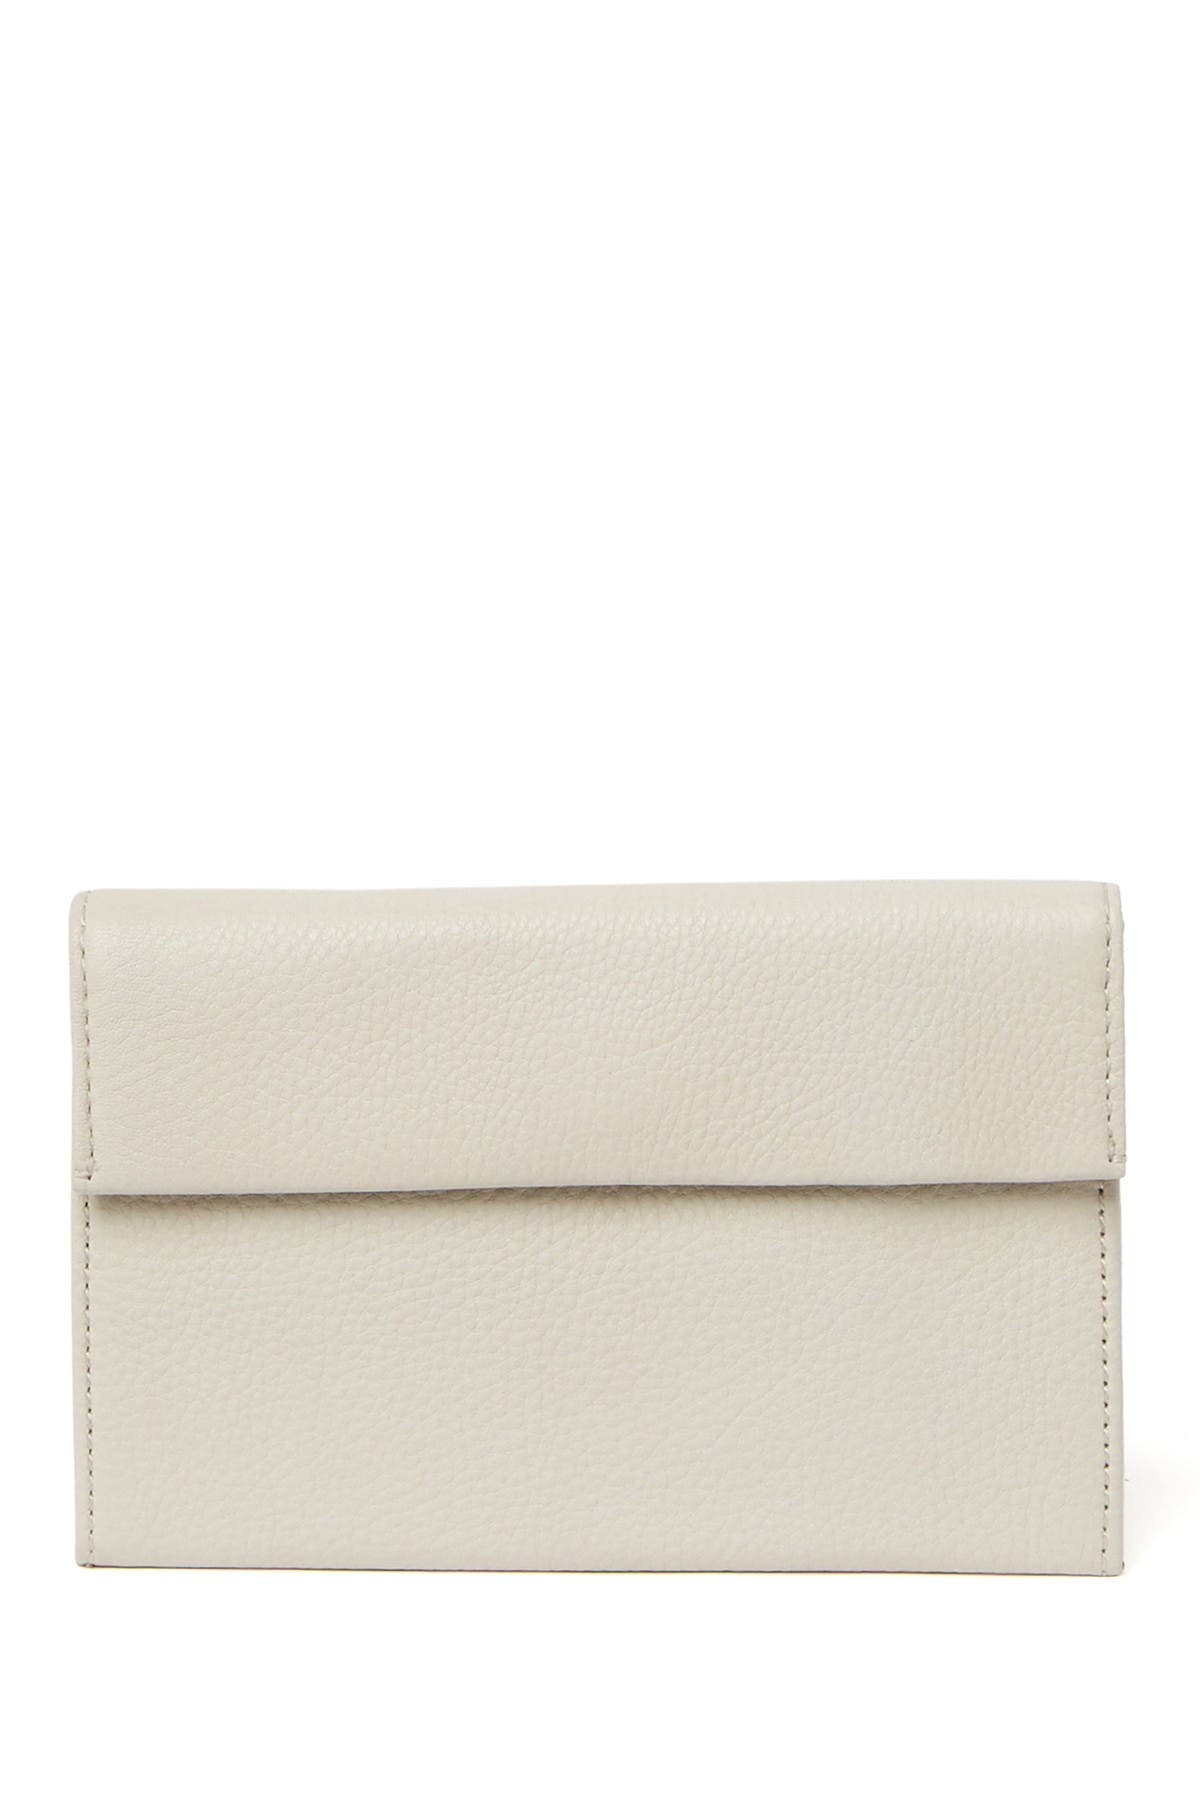 Hobo Ember Flap Wallet In Open White14